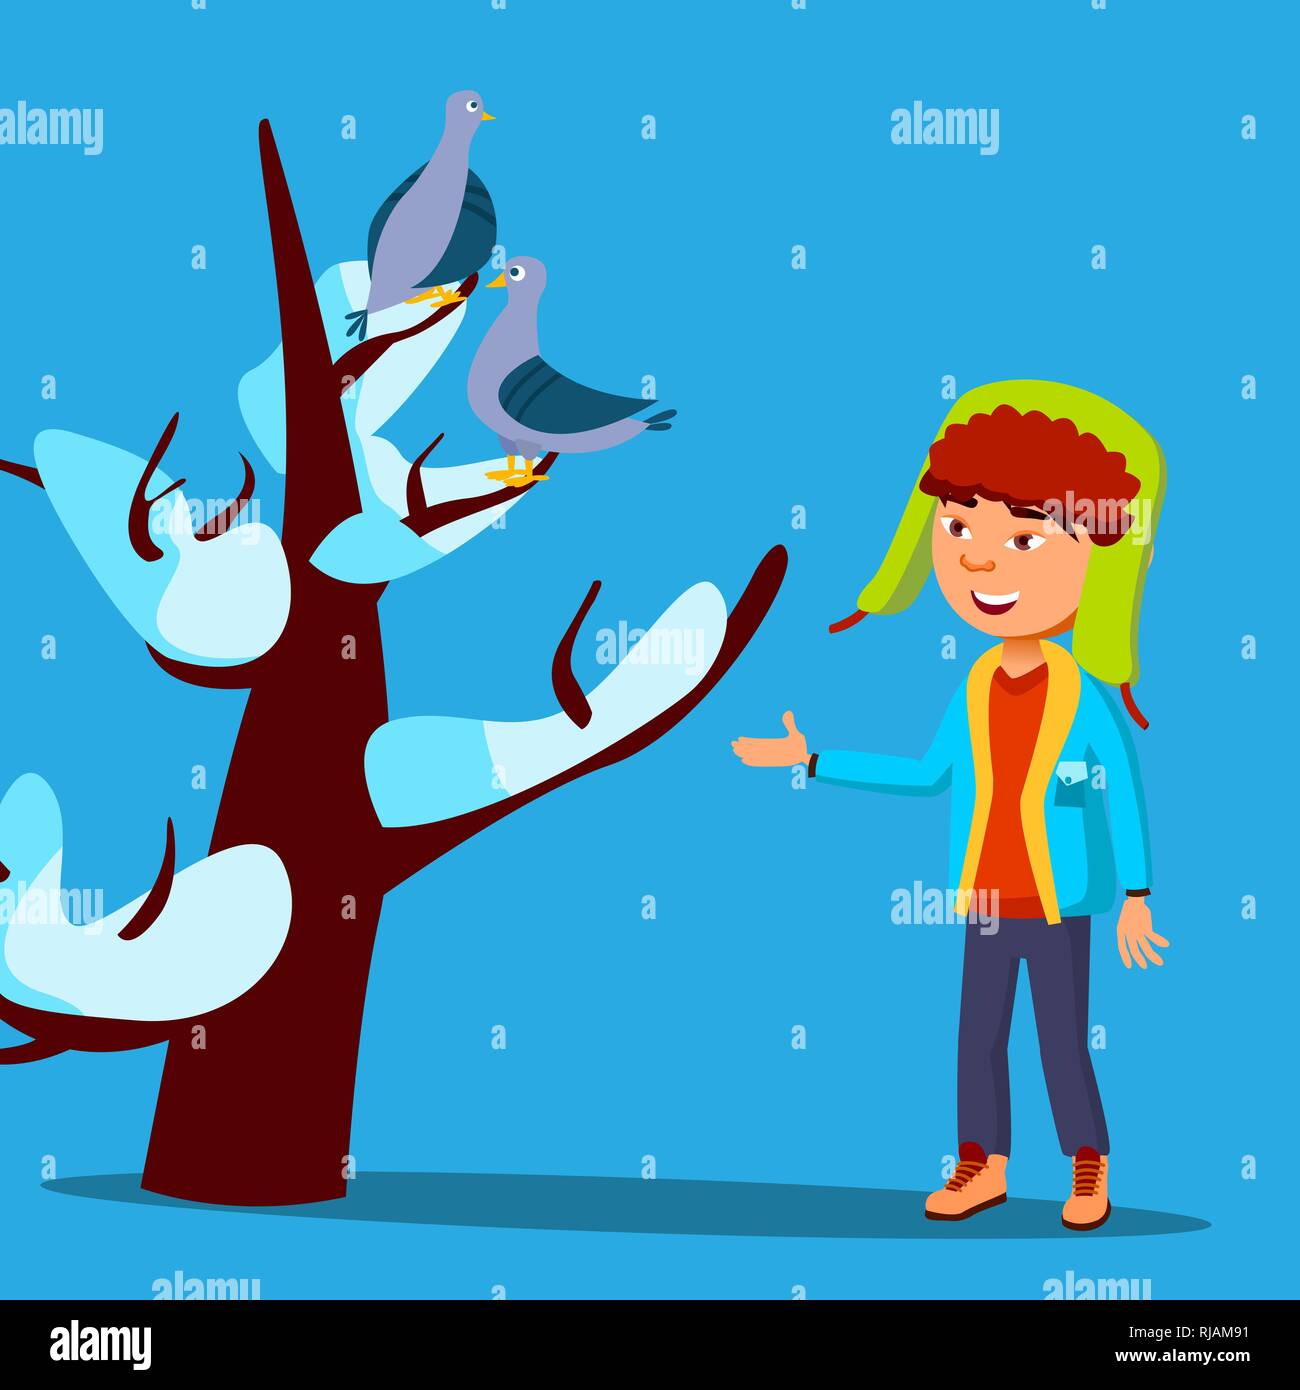 Kind Im Winter Kleidung Sieht Bis Zu Ein Vogel Sass Oben Auf Der Snow Covered Baum Vektor Isolierte Abbildung Stock Vektorgrafik Alamy